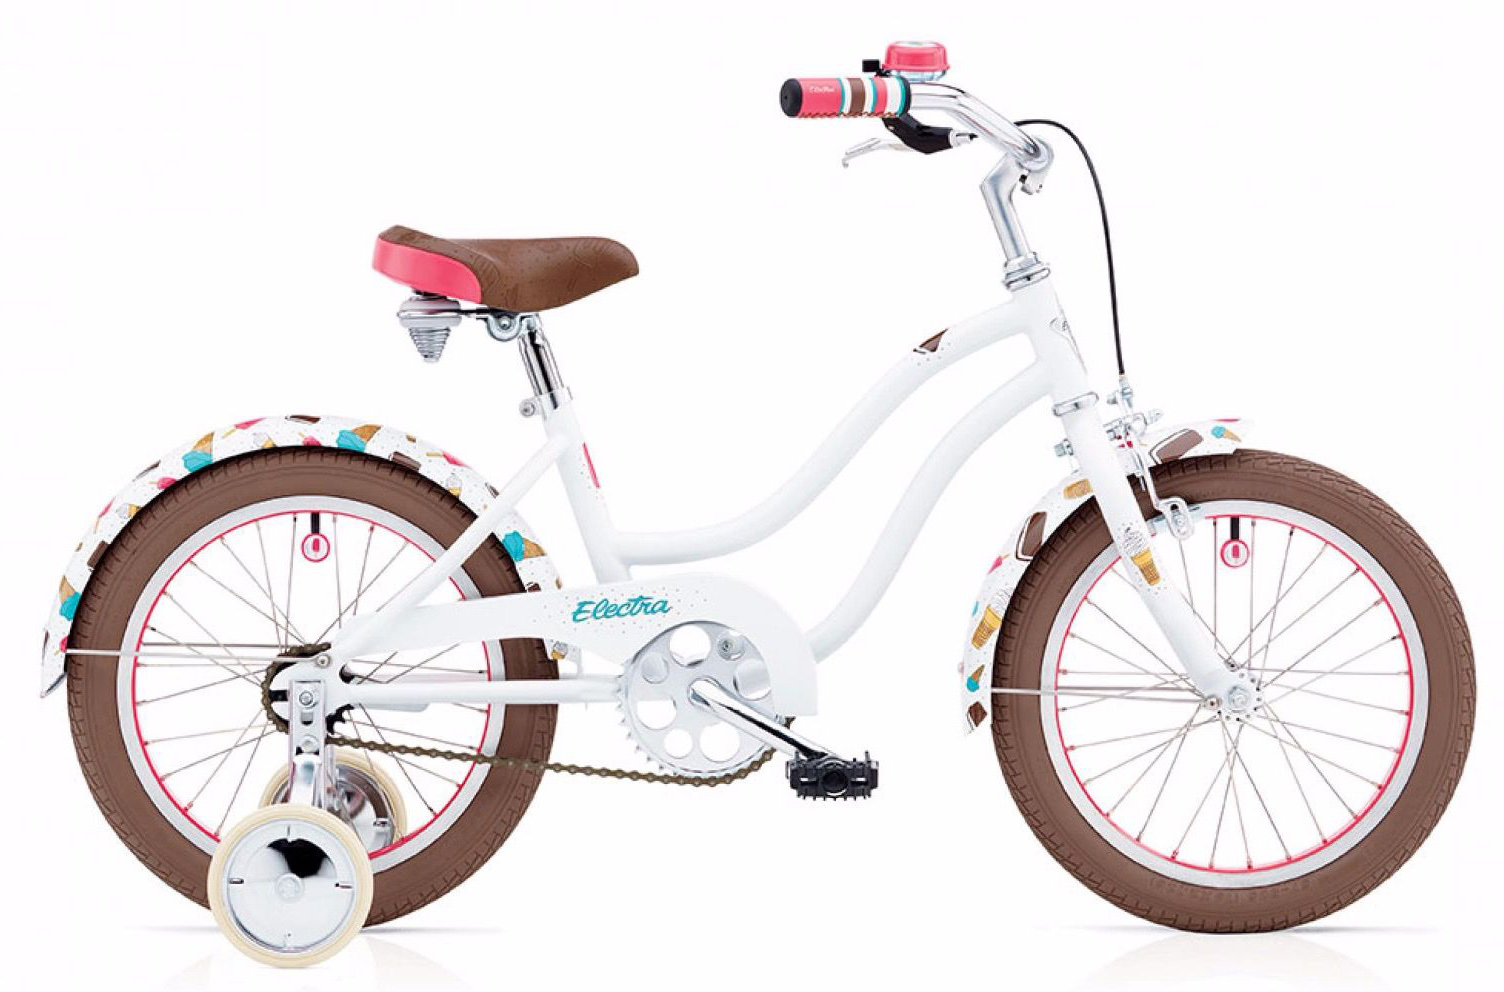  Отзывы о Детском велосипеде Electra Soft Serve 2019